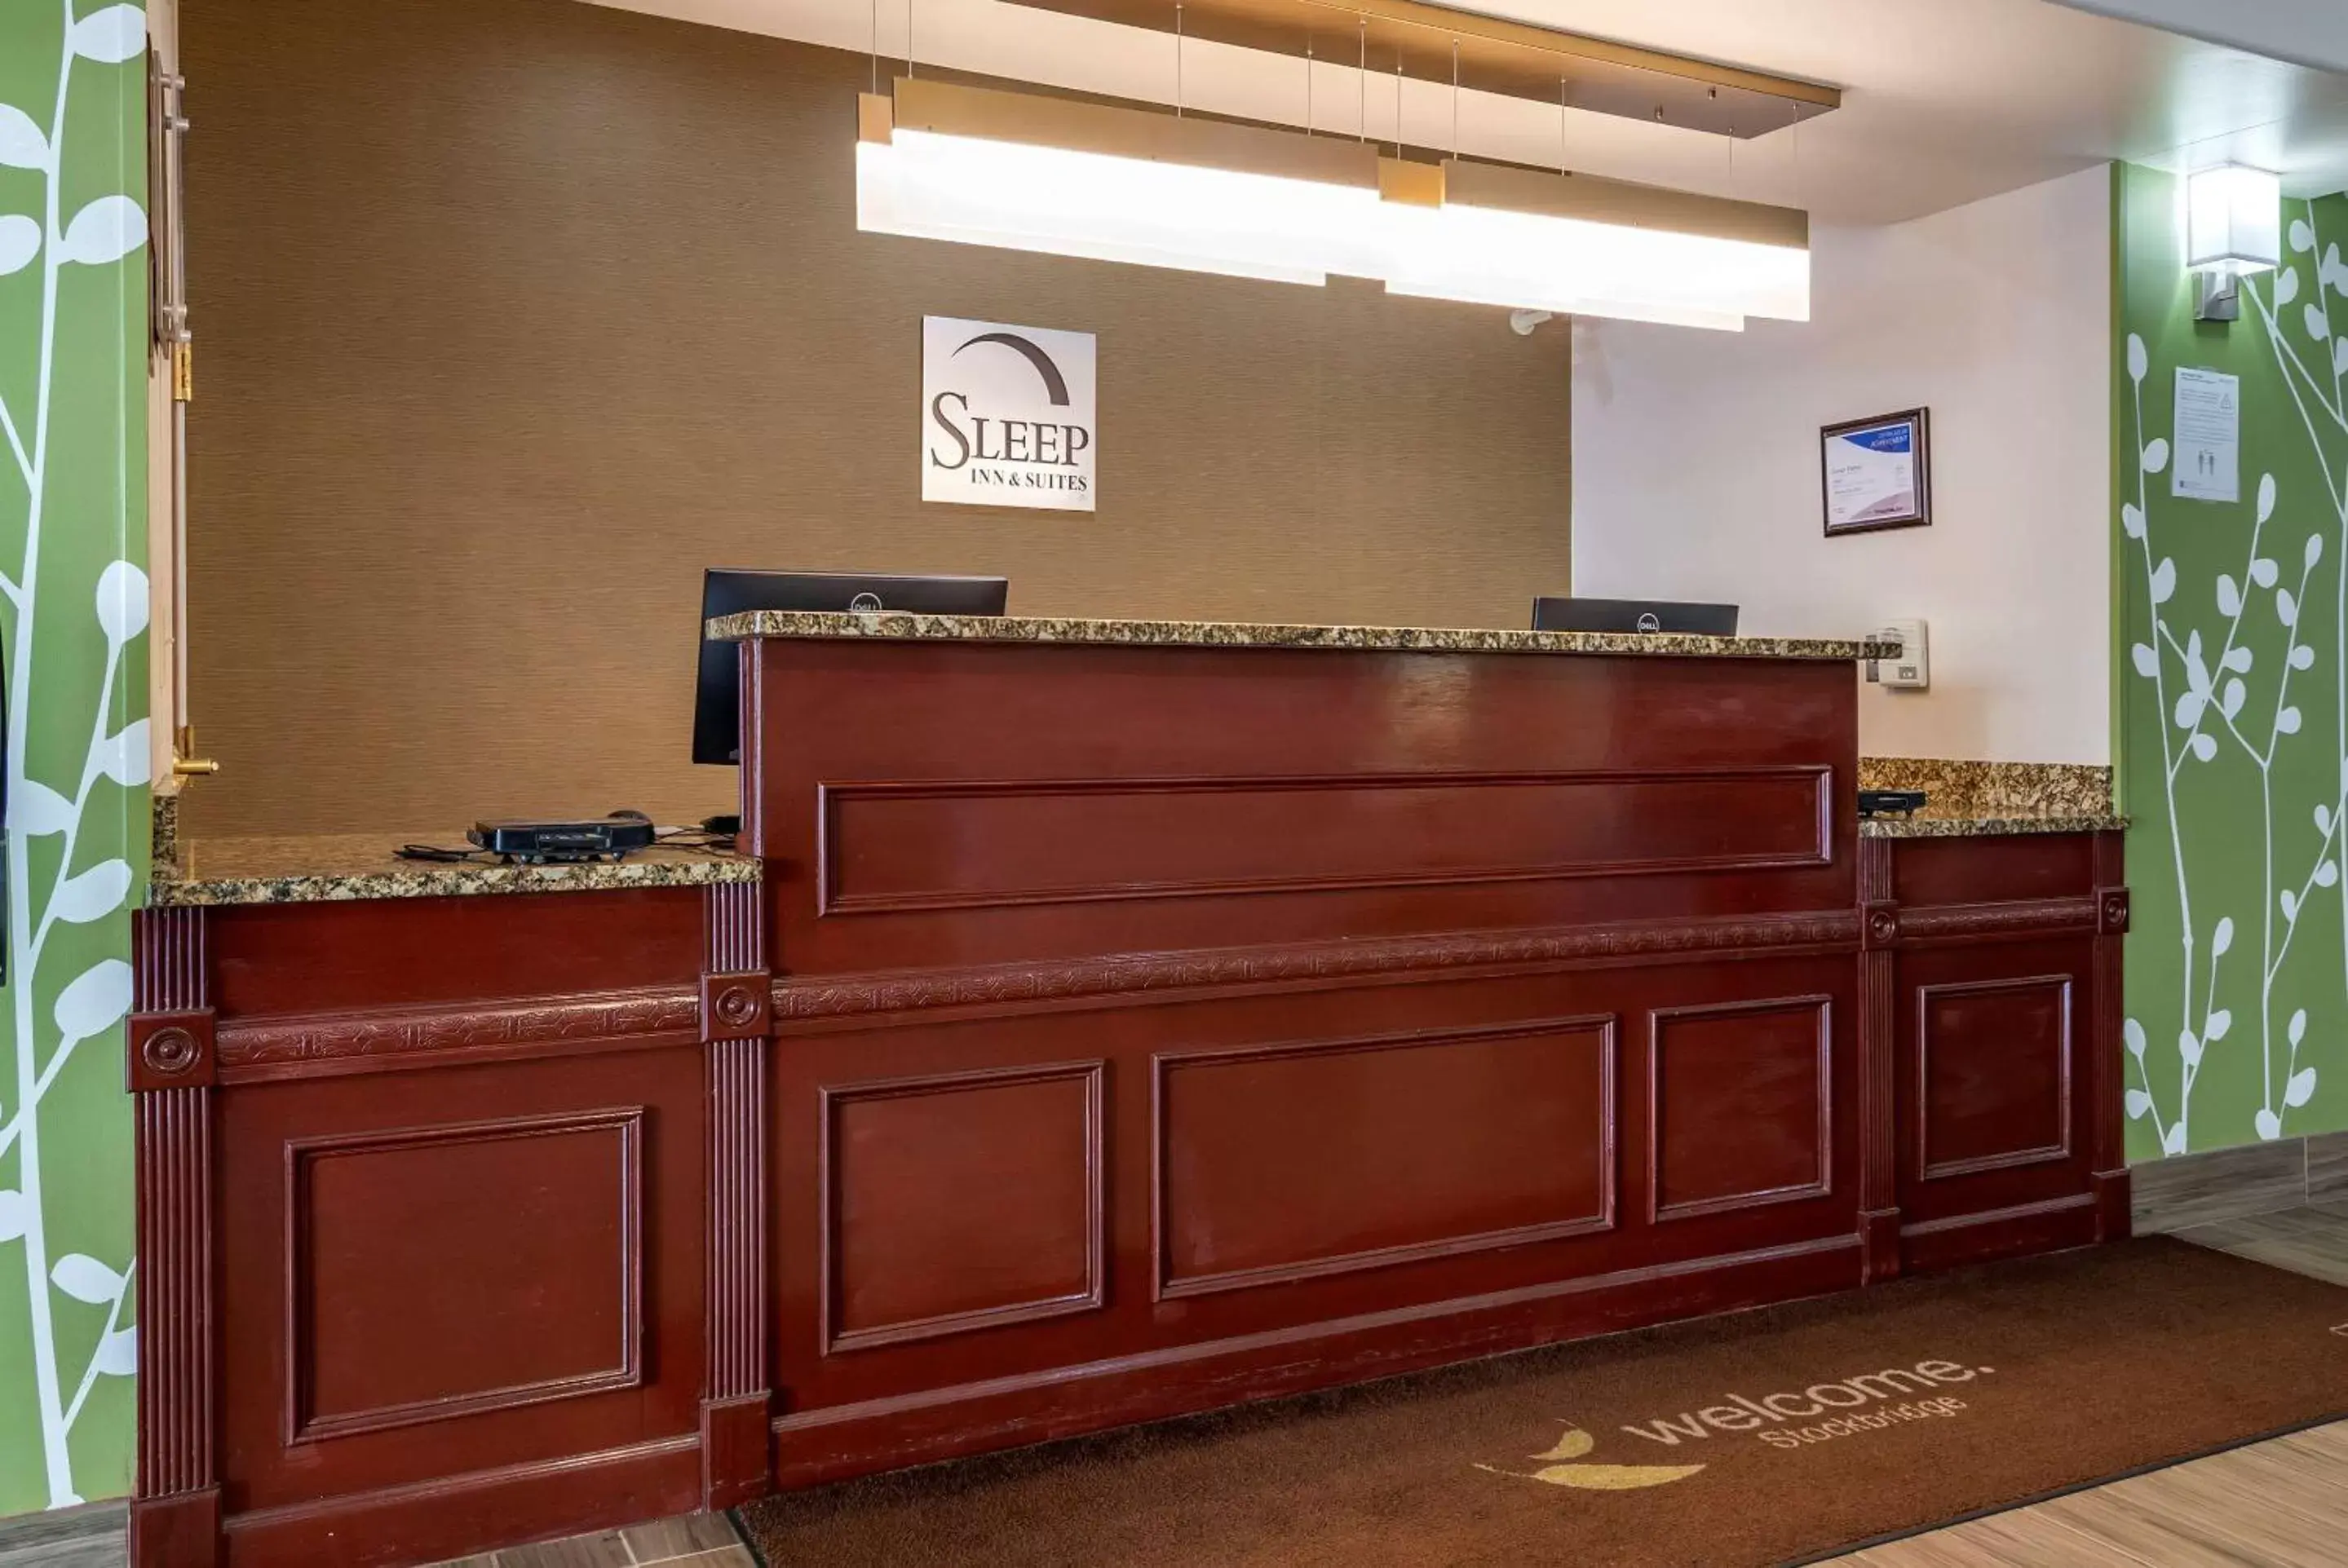 Lobby or reception, Lobby/Reception in Sleep Inn & Suites Stockbridge Atlanta South